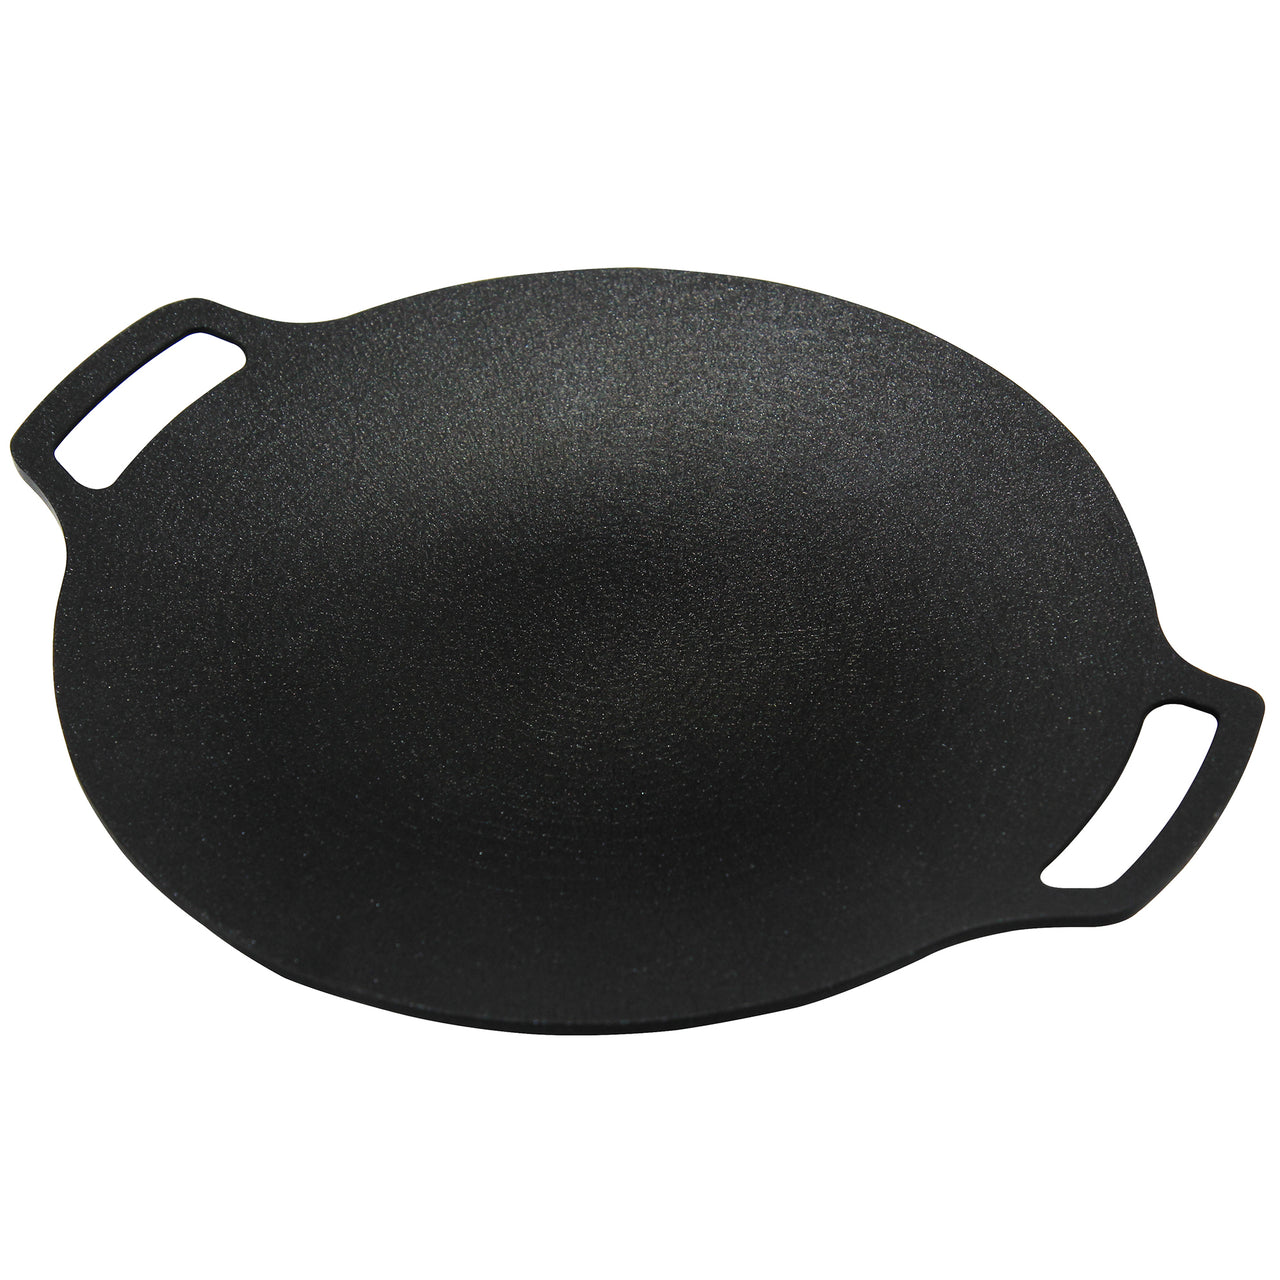 Black 36cm Cast Iron Griddle Pan